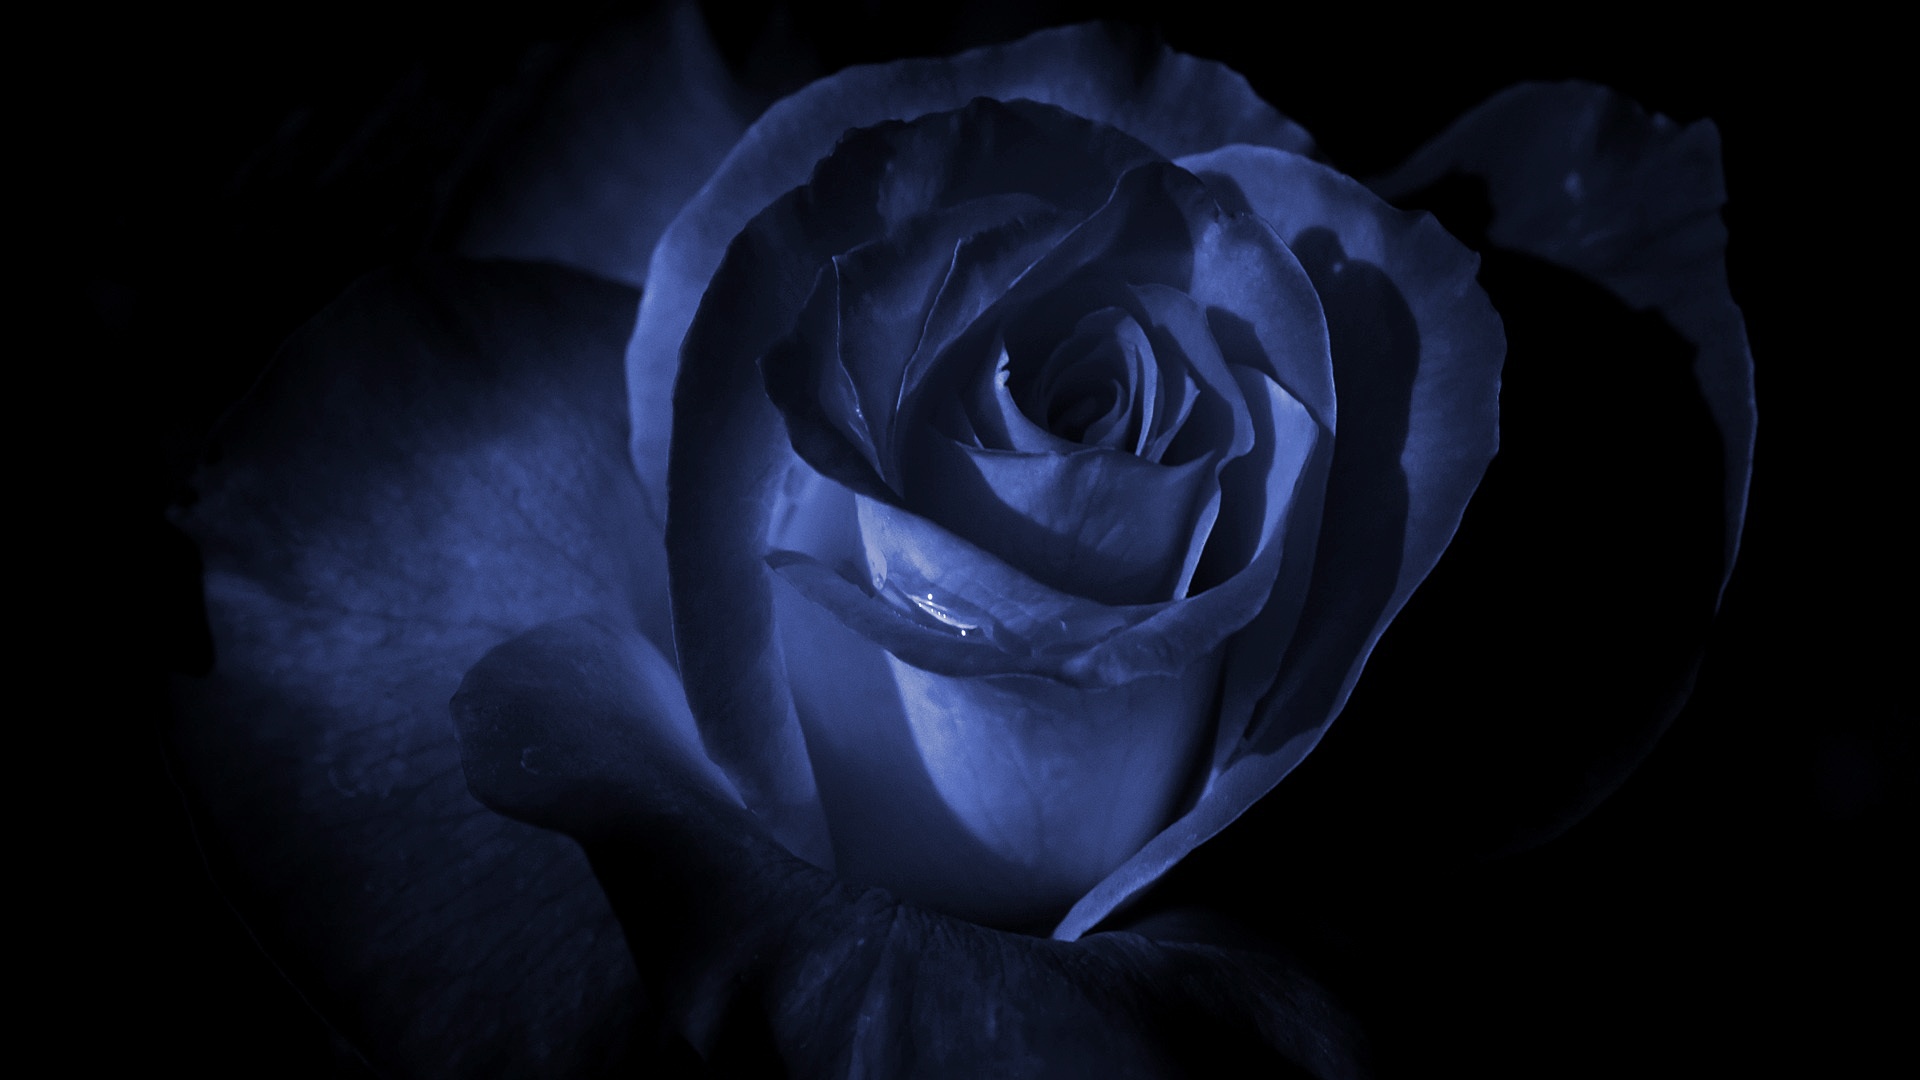 [47+] Dark Blue Roses Wallpaper | WallpaperSafari.com